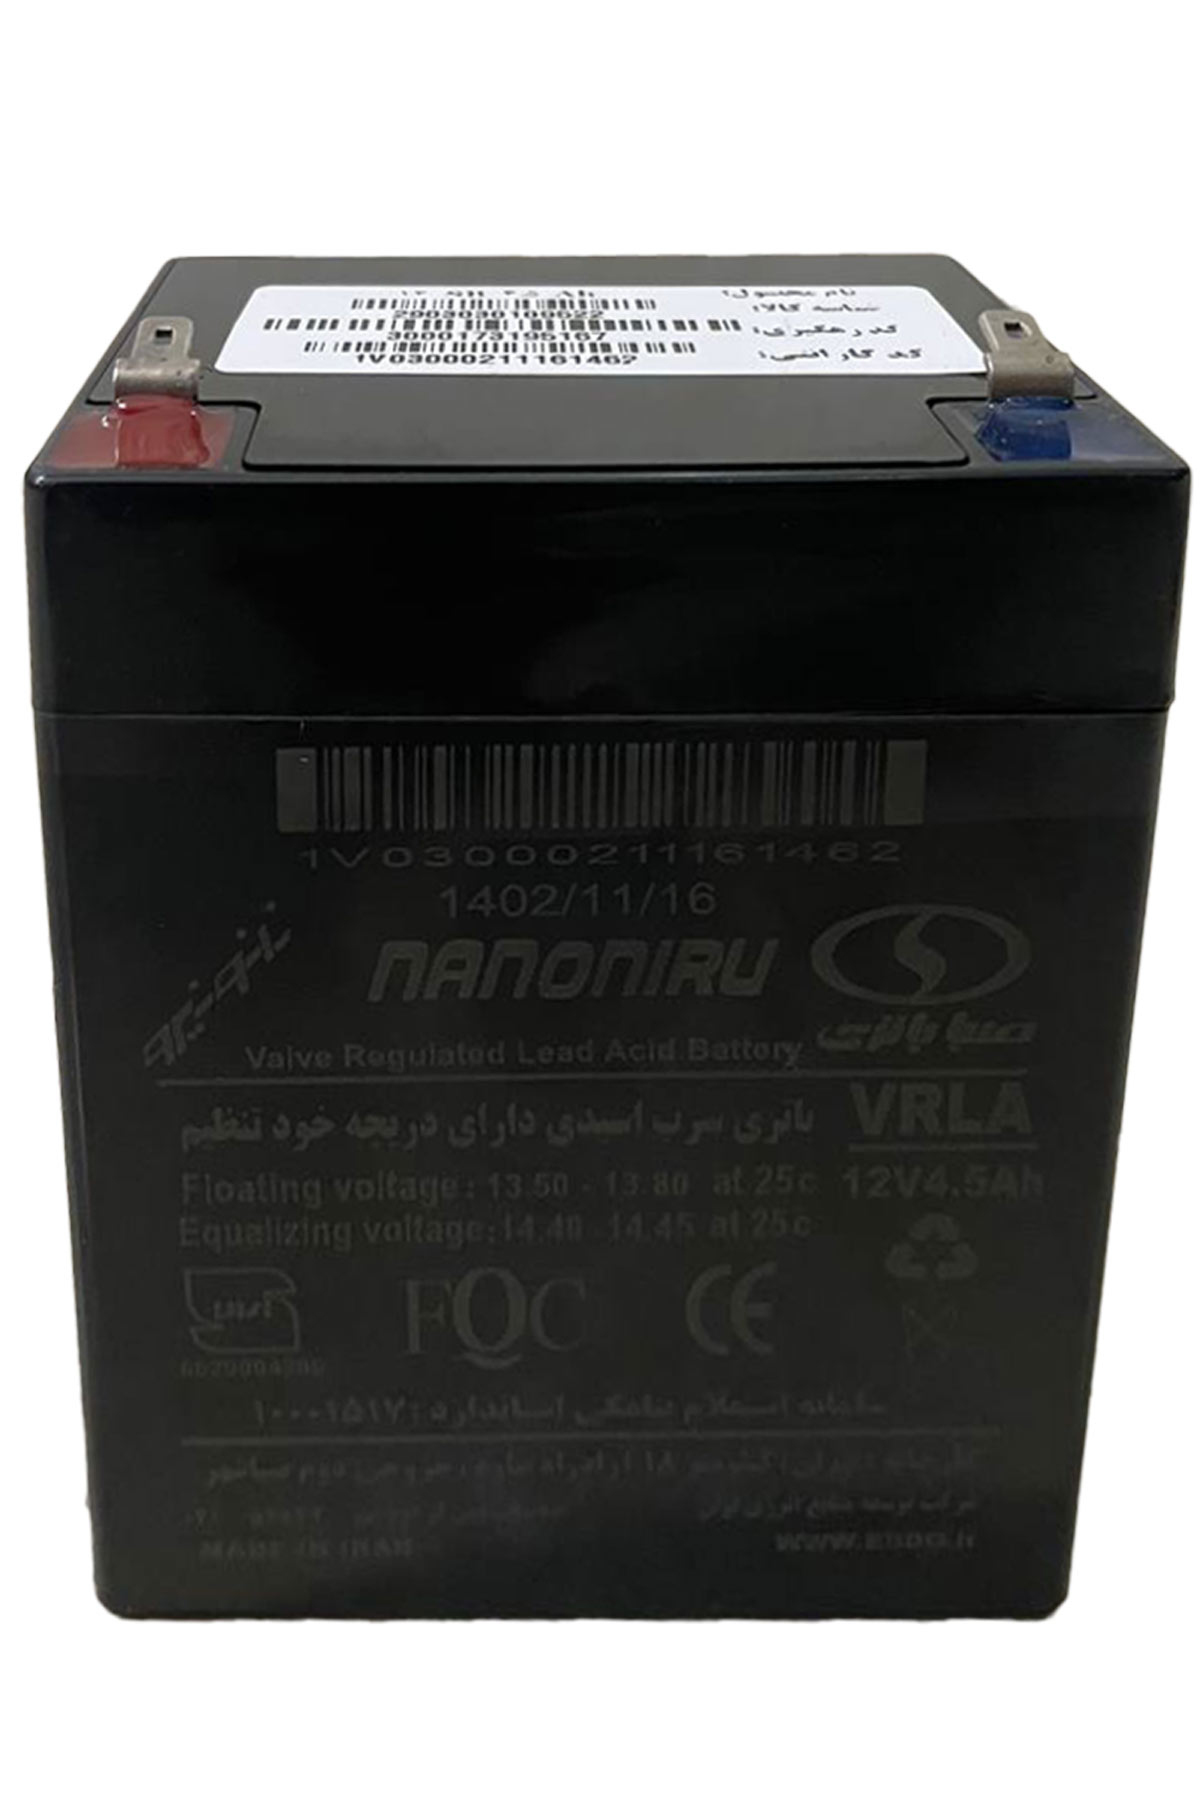 باتری 12 ولت 4.5 آمپر صبا باتری یکی از کاربردی ترین باتری های ساخت شرکت معتبر صبا باتری می باشد